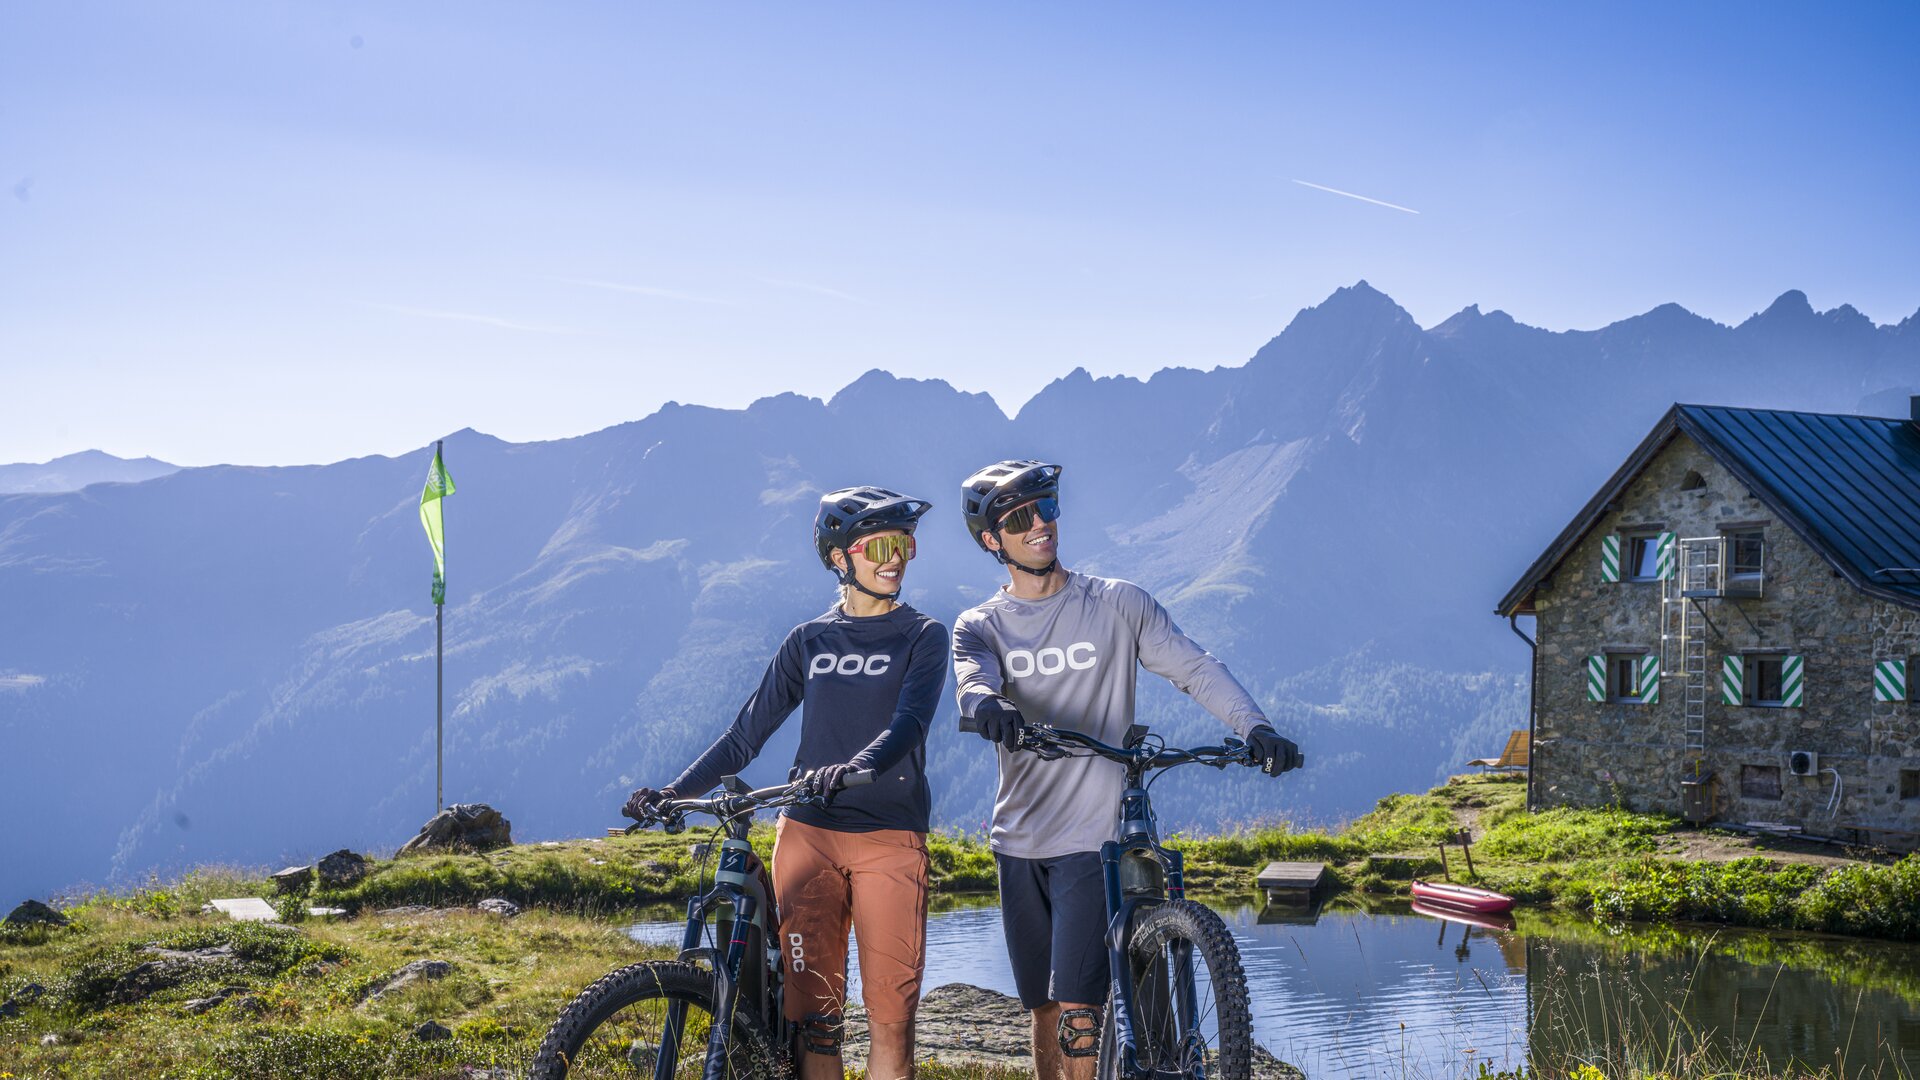 Ein Mann und eine Frau in schicken Mountainbike-Outfits stehen in den Ischgler Bergen hinter einer Hütte neben einem glitzernden See und lächeln fröhlich.